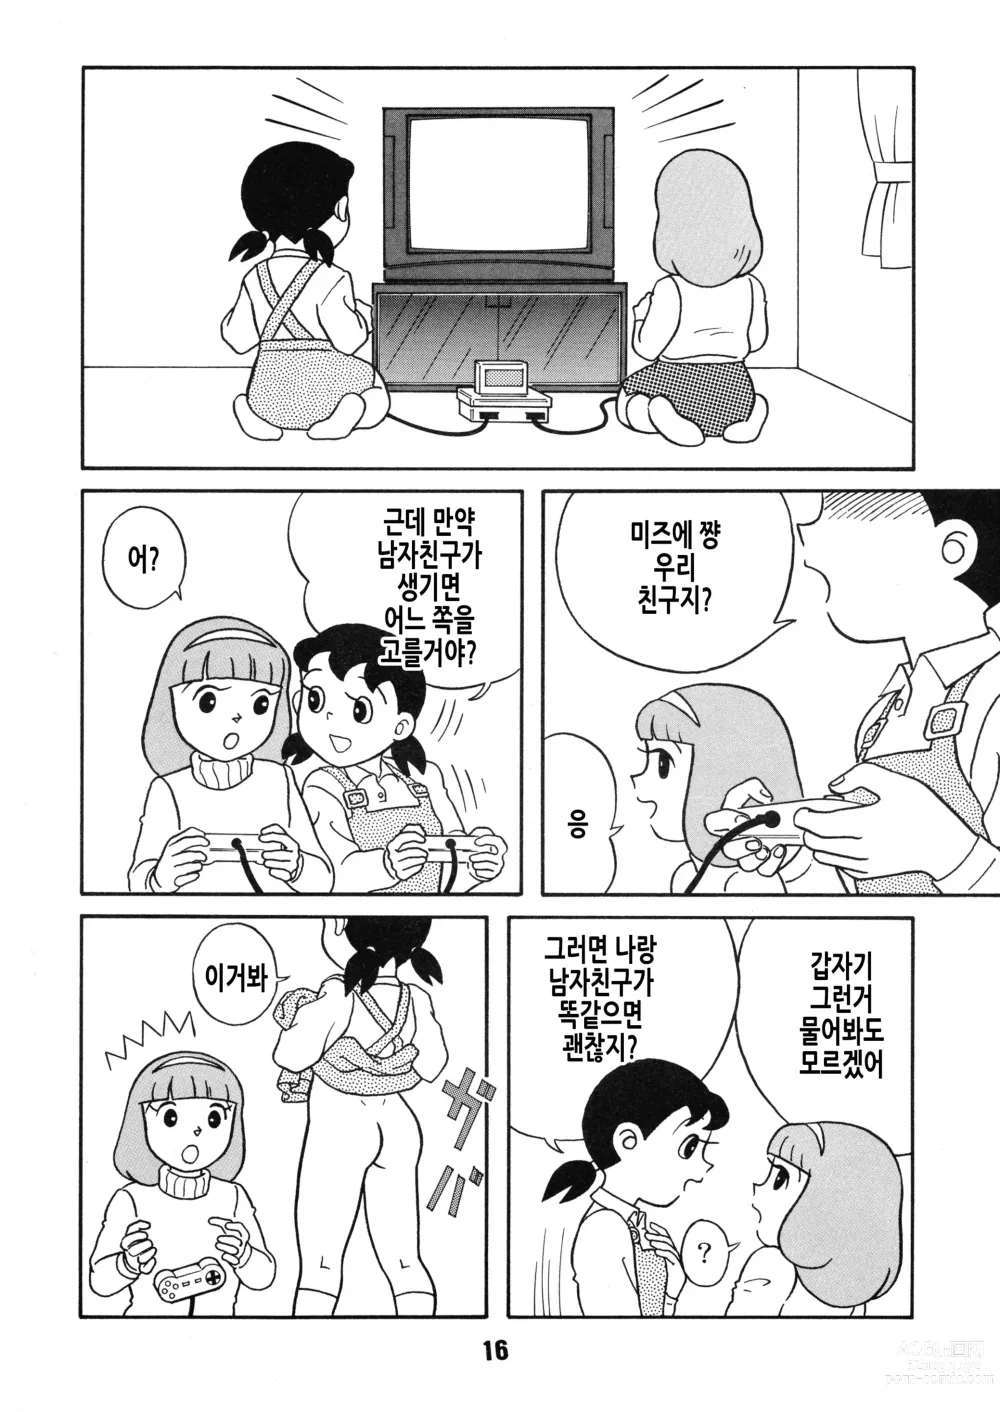 Page 17 of doujinshi Chonchorin